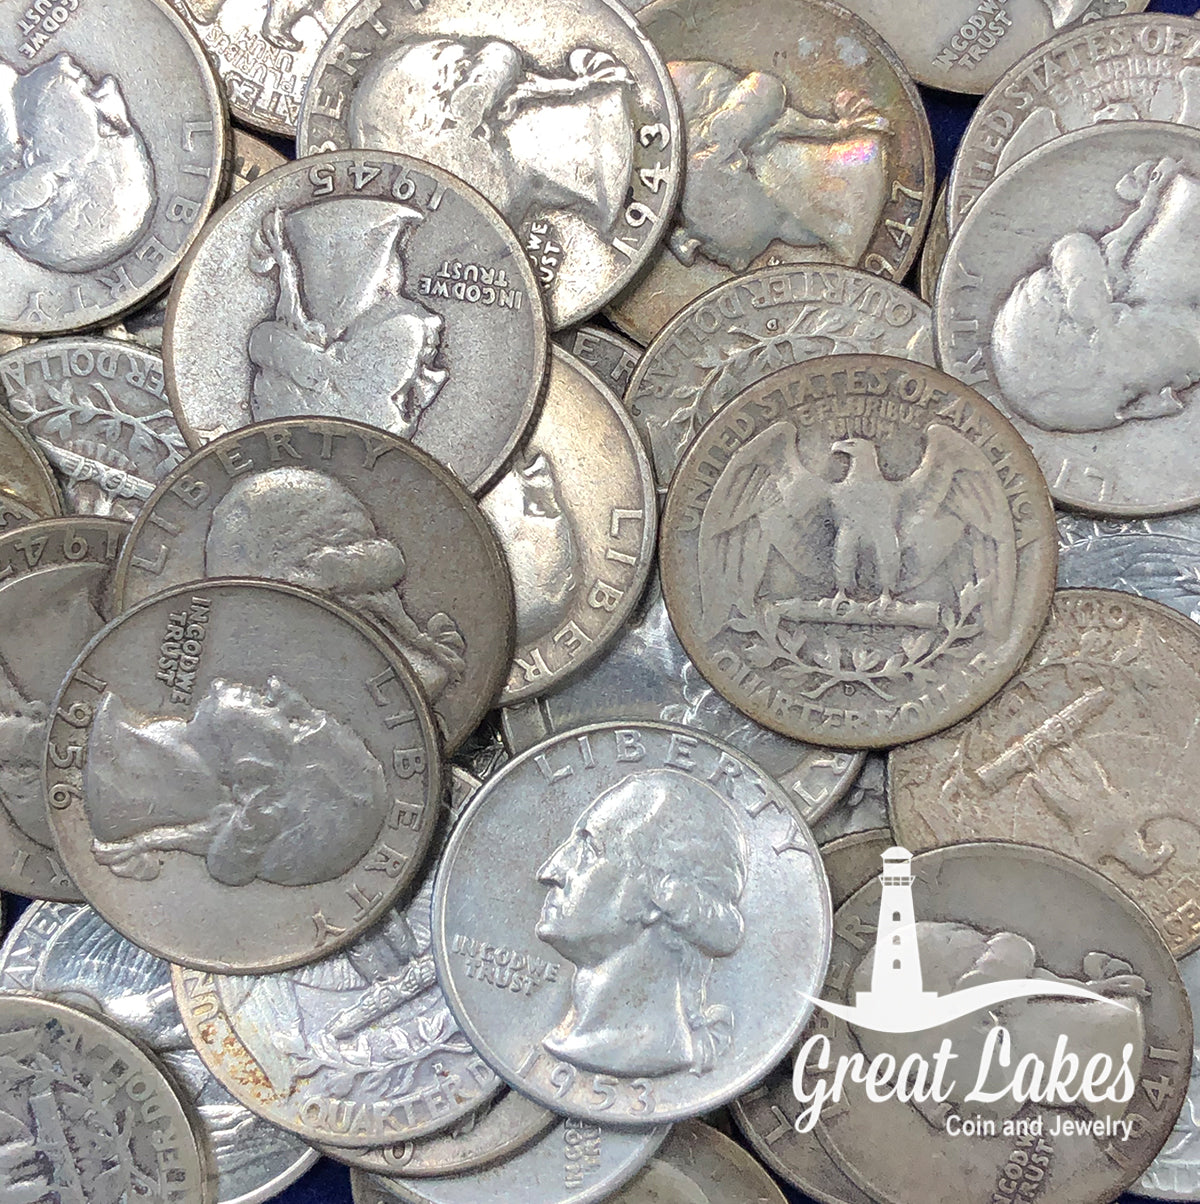 90% Silver Washington Quarters ($5 FV)